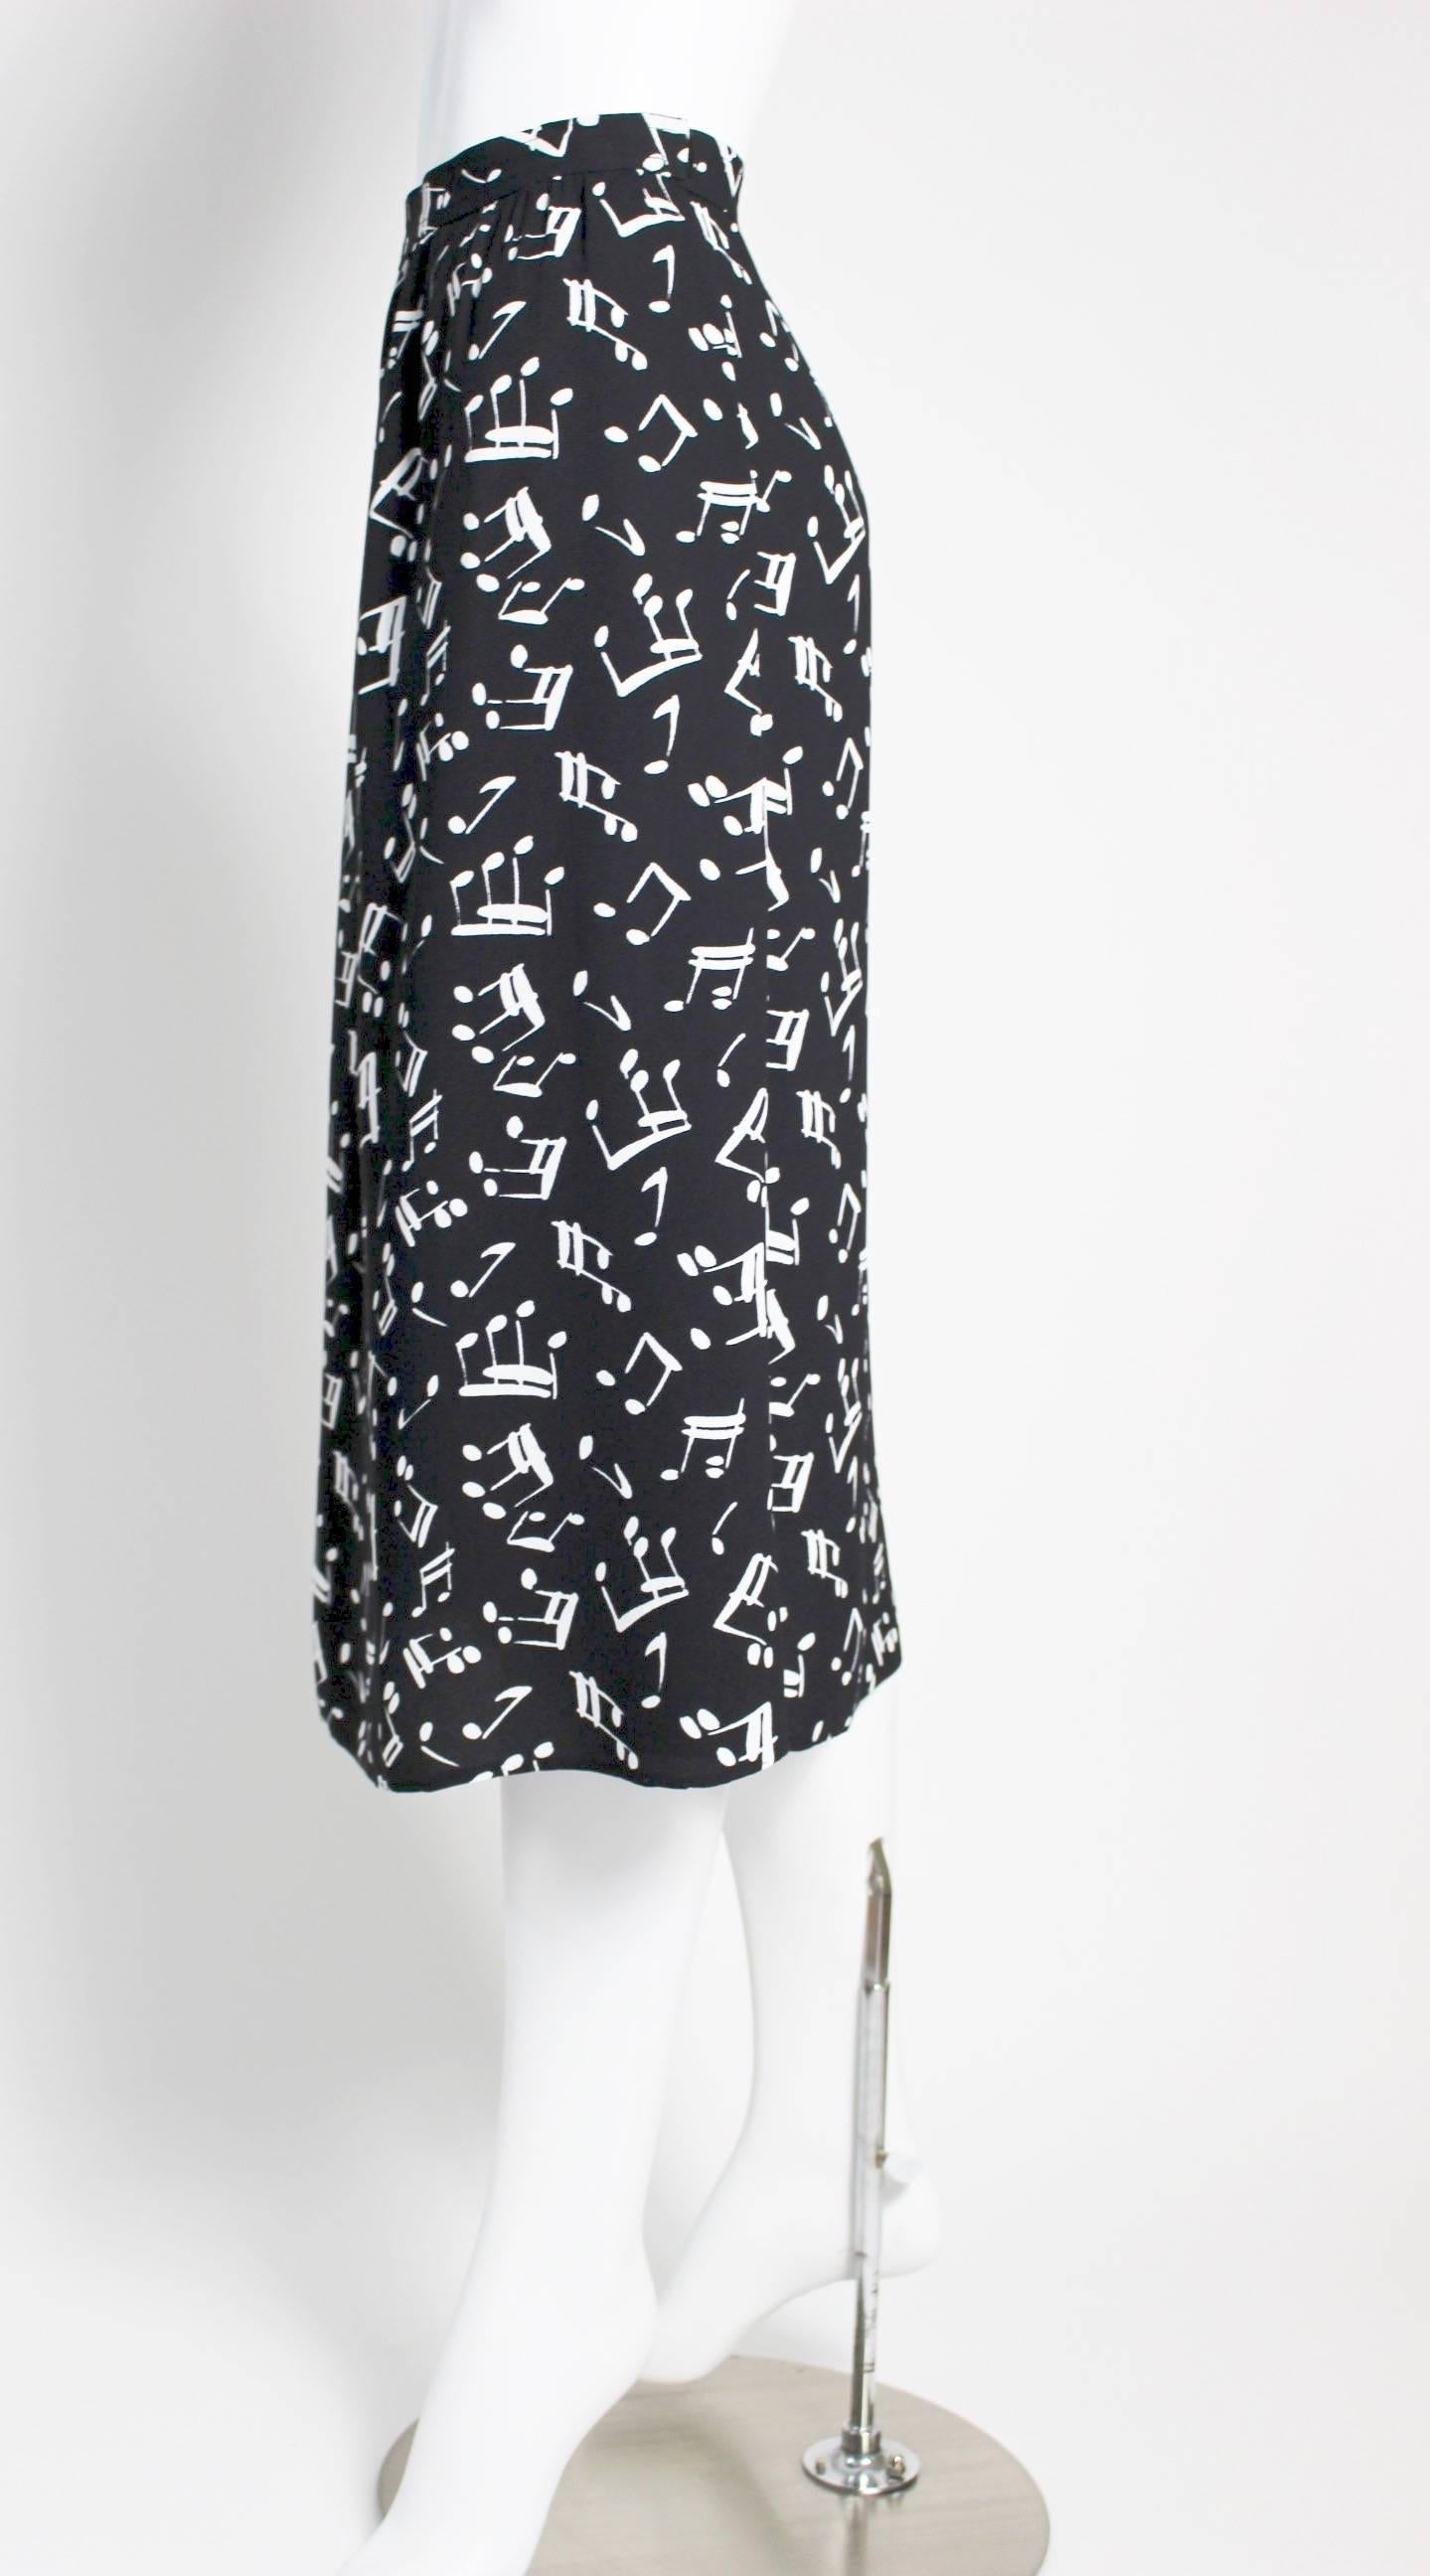 Black Yves Saint Laurent Documented Crepe Musical Note Print Skirt, 1982 